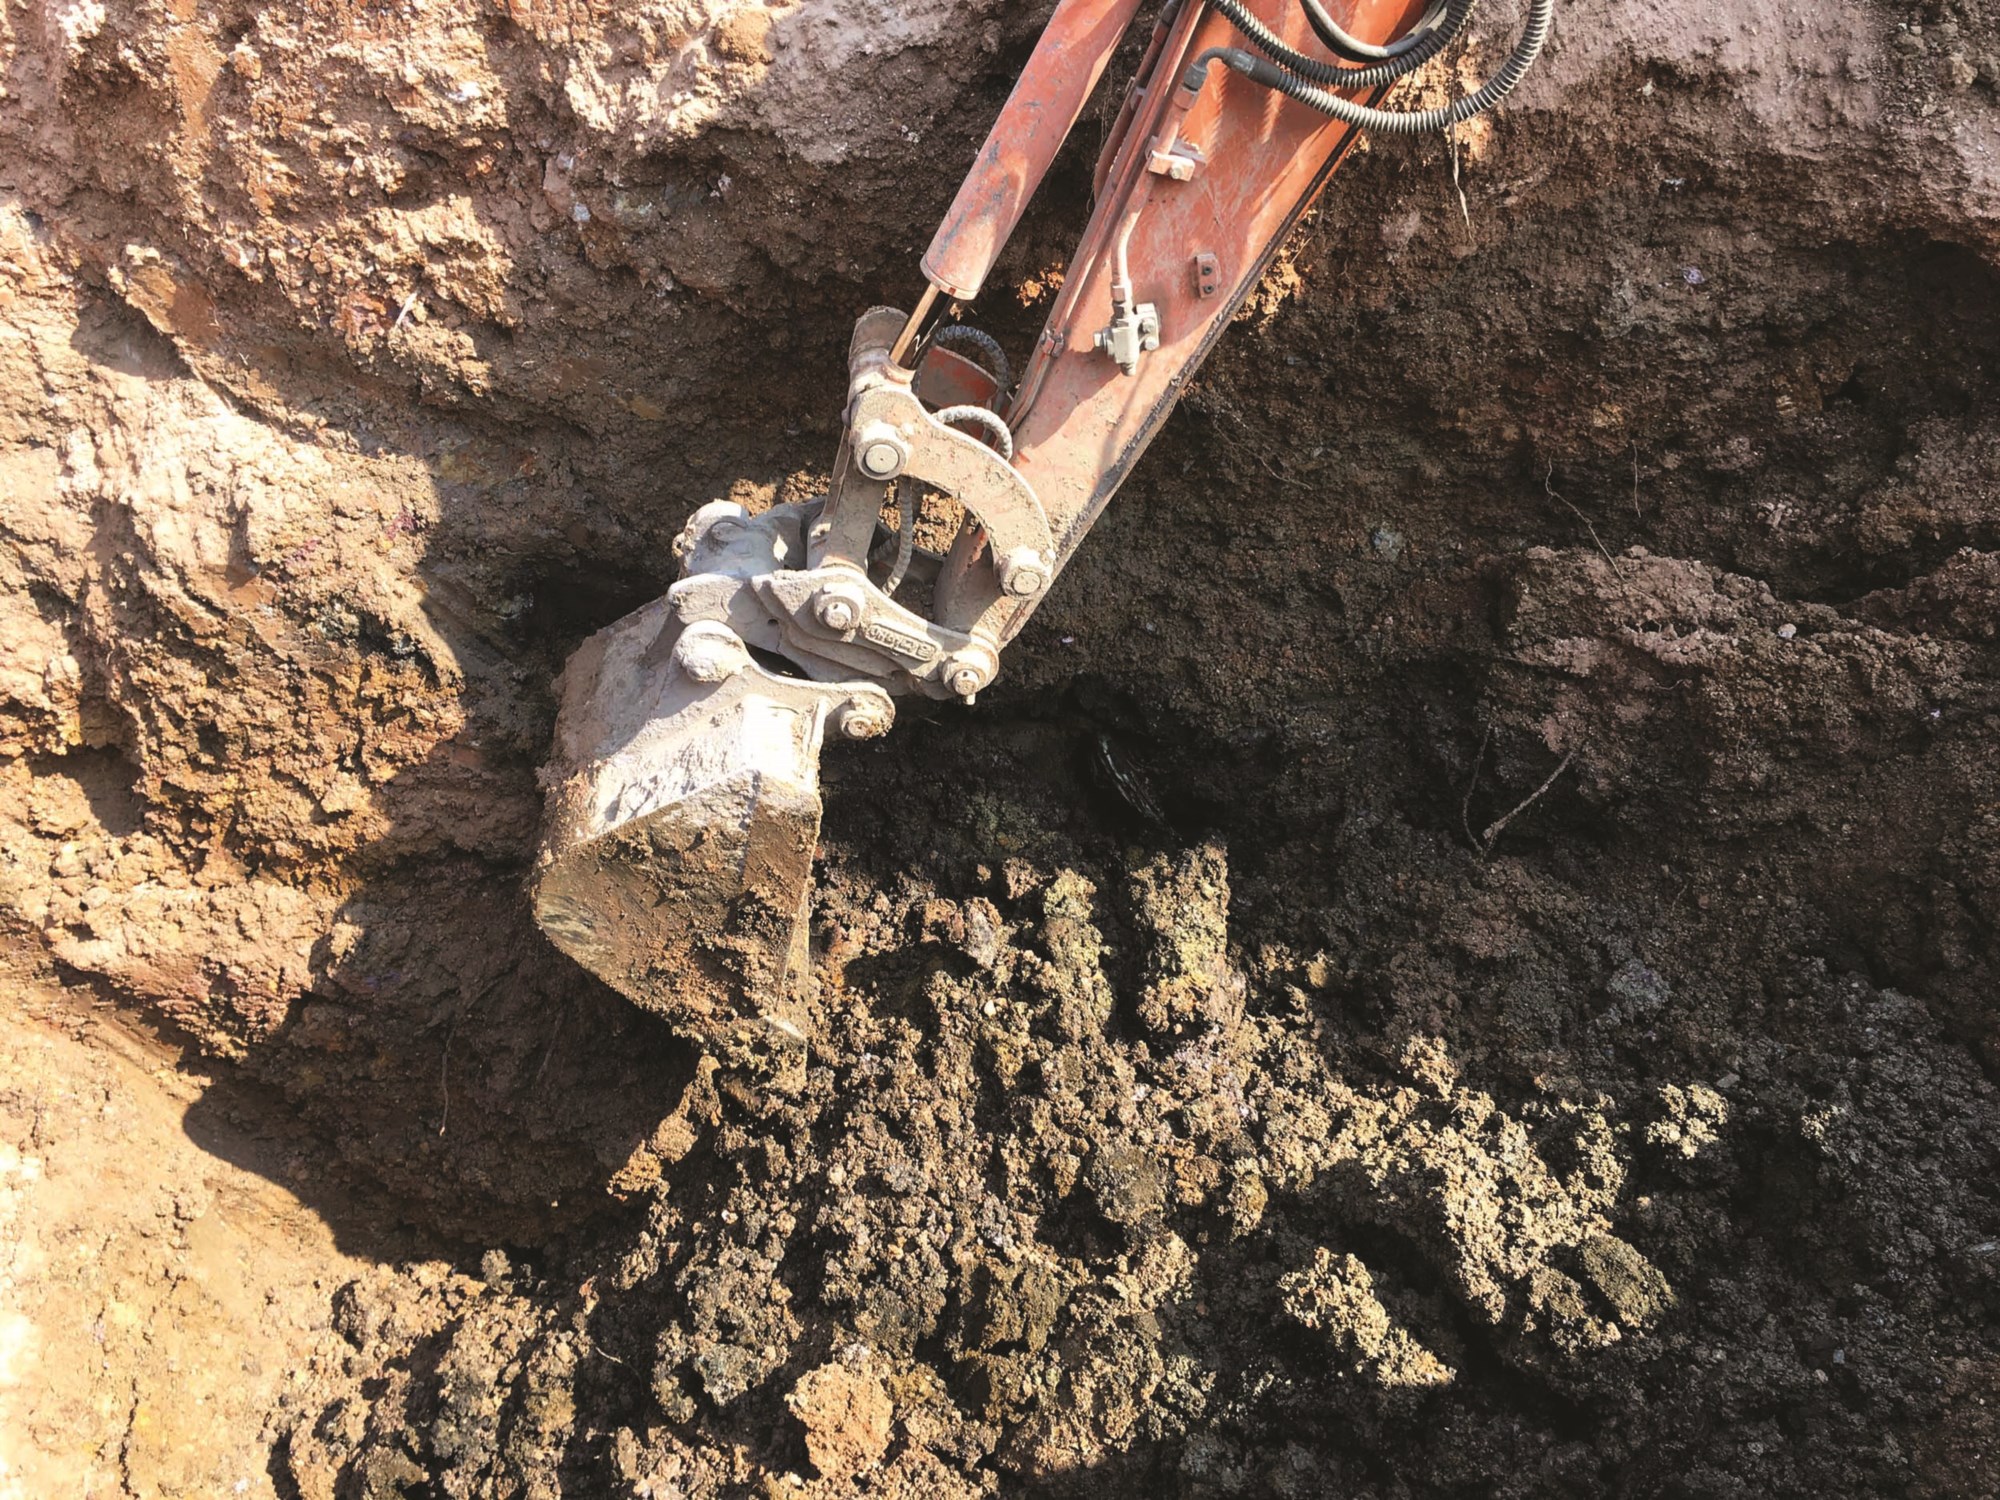 Việc kiểm tra ngẫu nhiên bằng máy xúc nơi trước đây là các hố phân vẫn phát hiện một lượng lớn phân gà tươi được chôn lấp ở độ sâu 2 - 3m